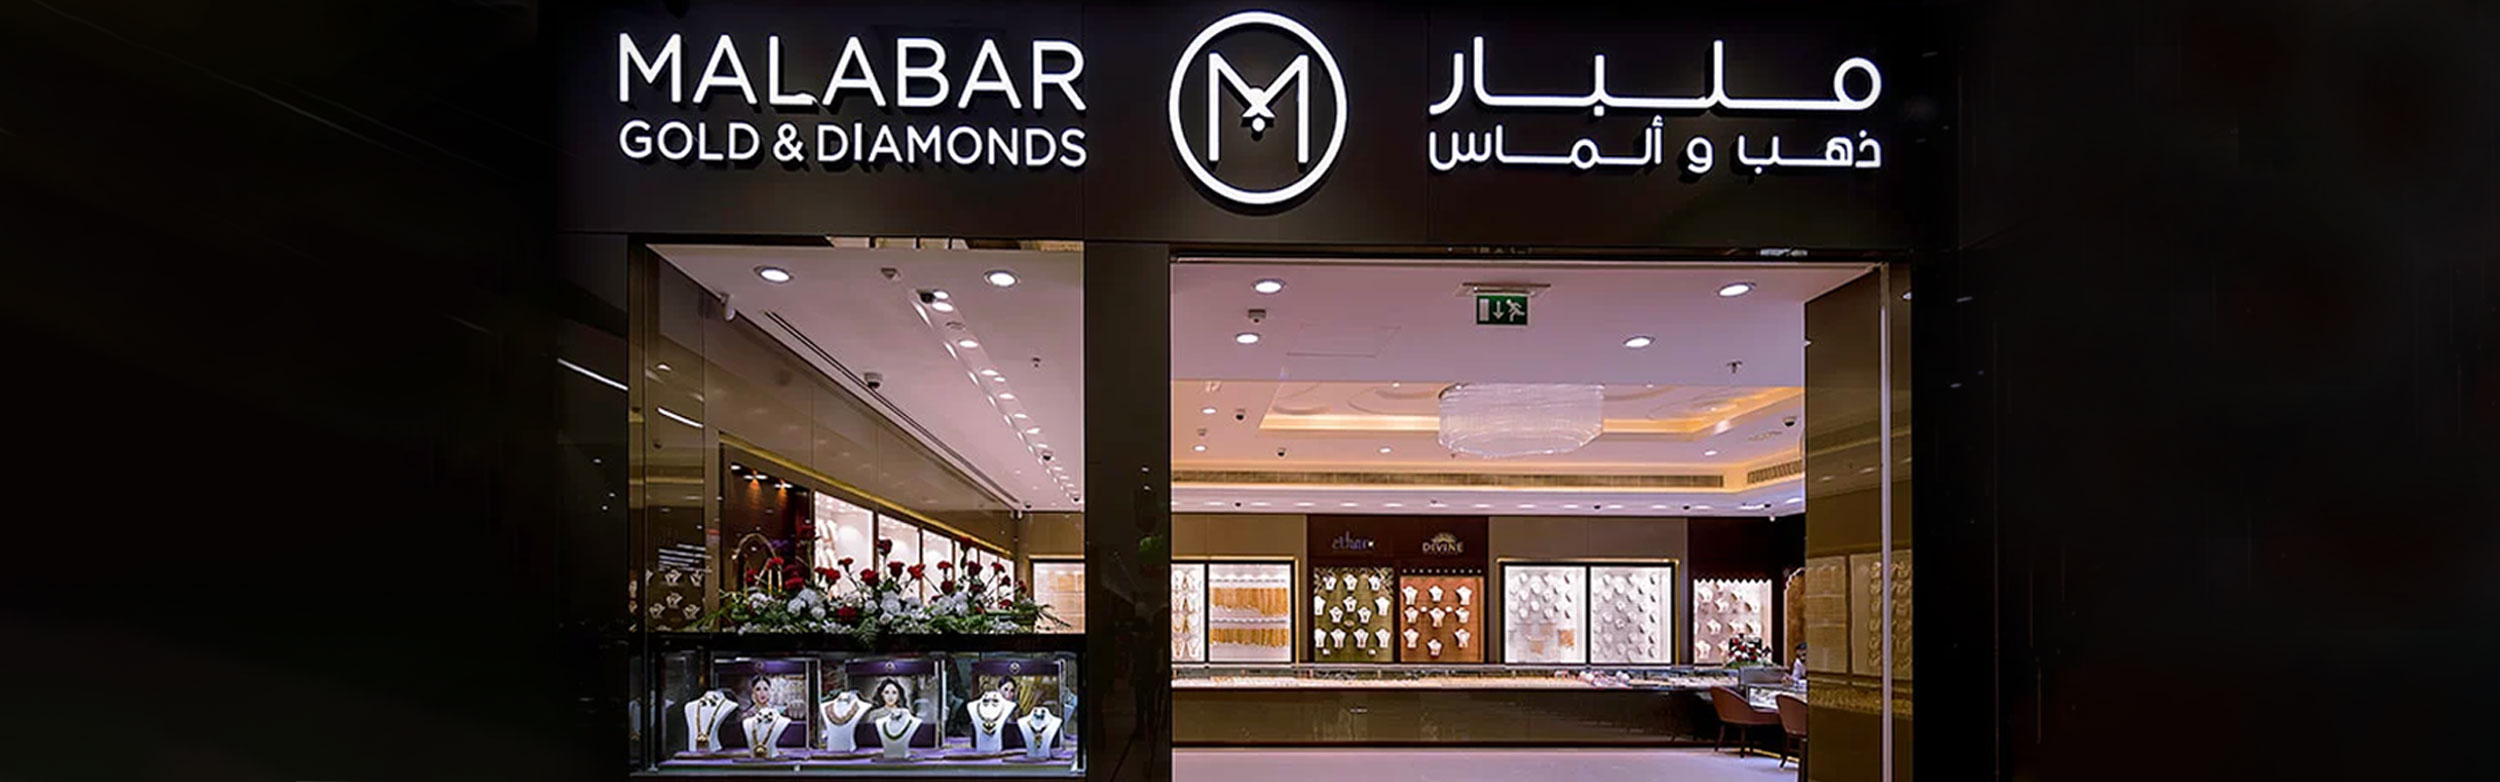 Malabar Gold & Diamonds Stores in Al Hidd, Bahrain